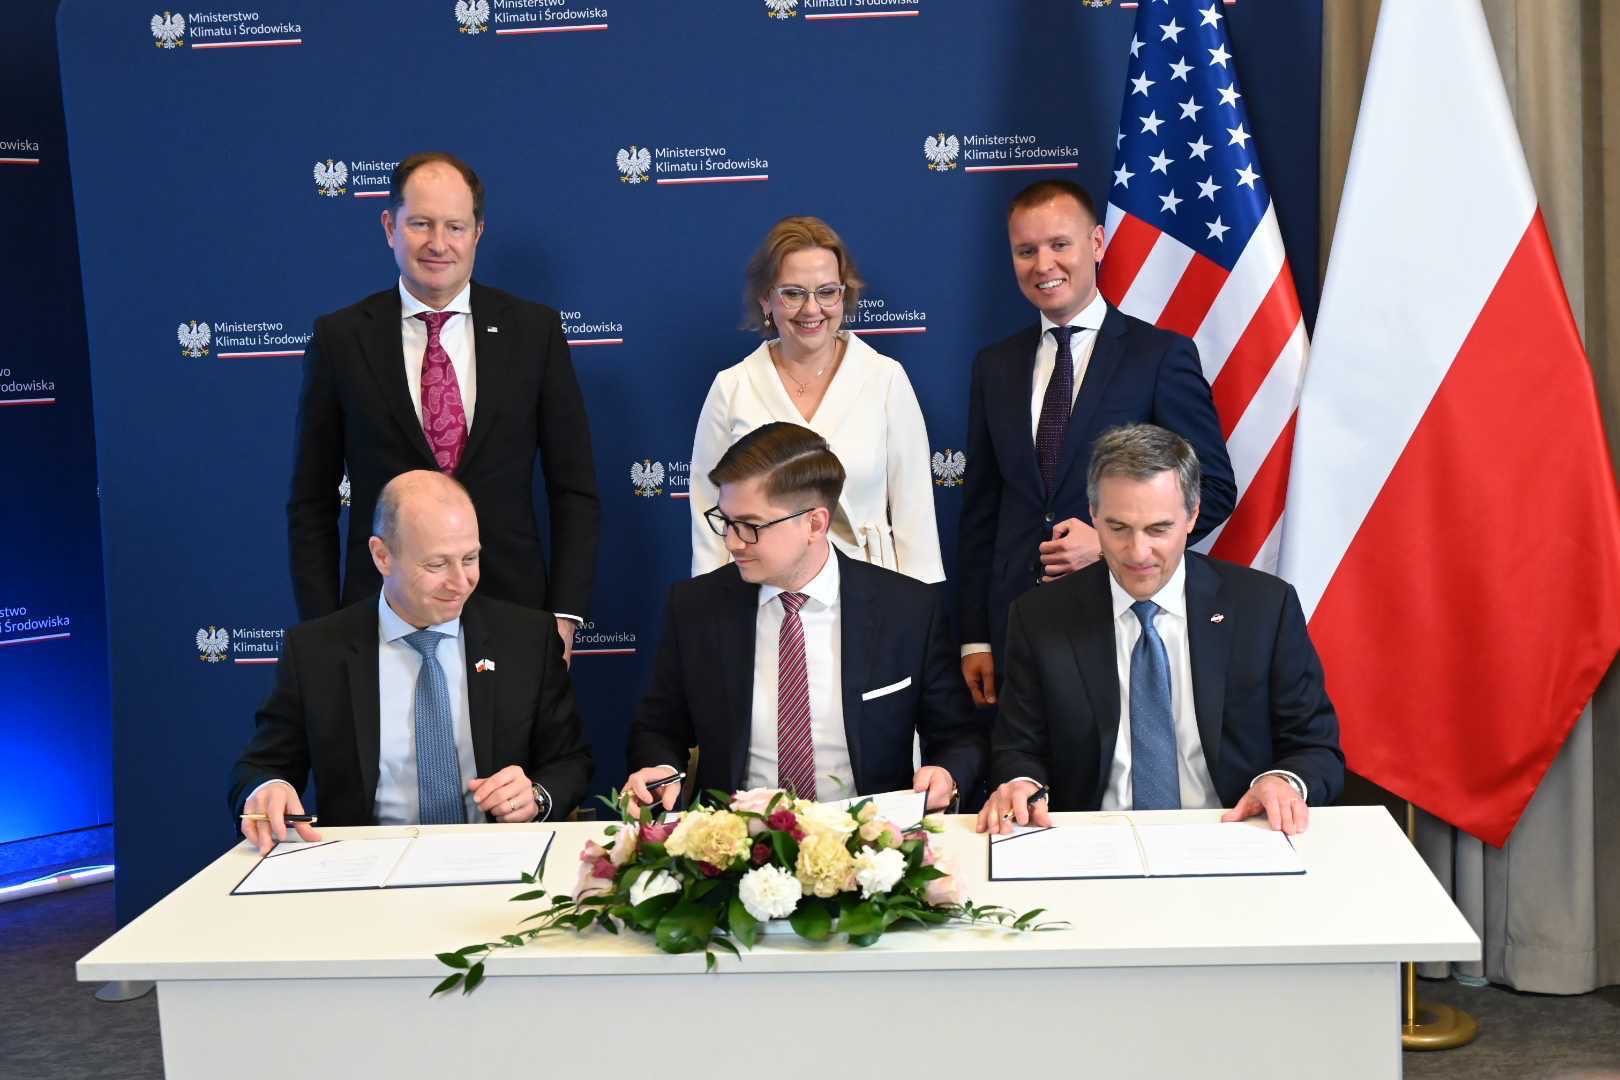 Podpisanie umowy o zasadach współpracy PEJ Bechtel Westinghouse. Fot. Ministerstwo klimatu i środowiska.